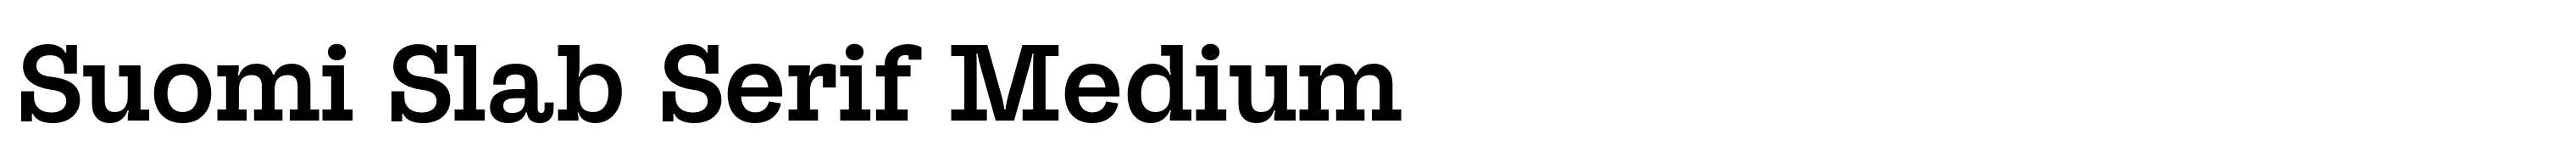 Suomi Slab Serif Medium